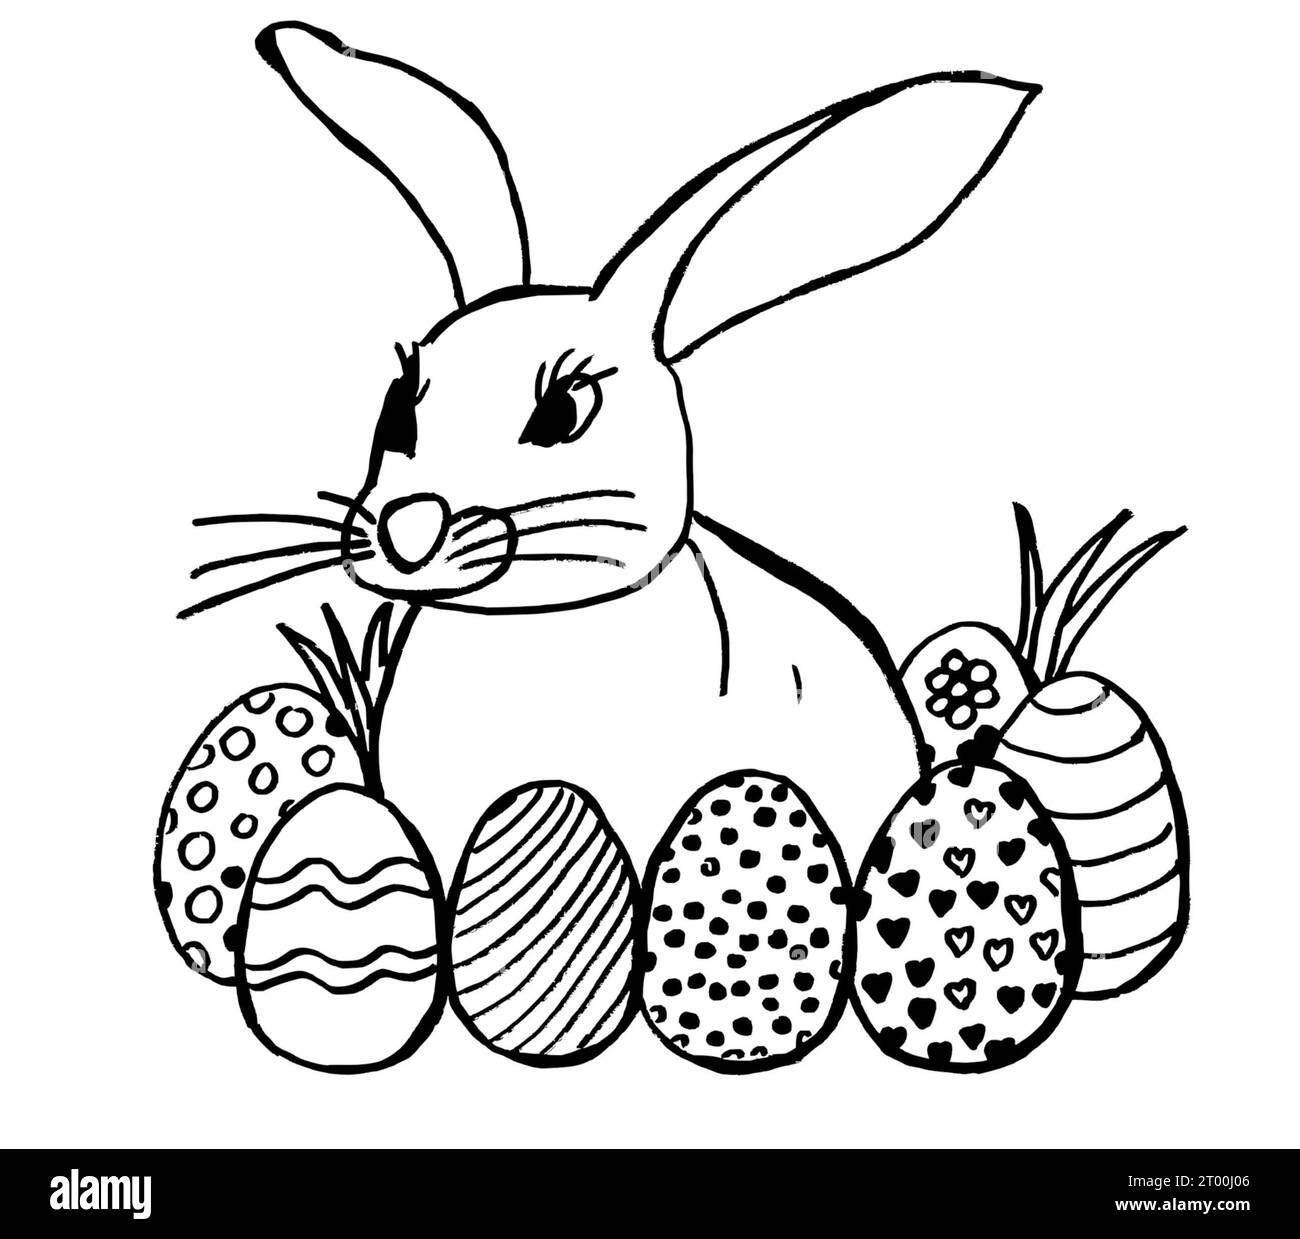 lapin et sept oeufs de pâques heureux dessin à la main lapin pour les livres d'enfants, cartes d'enfants et voeux de vacances. coloriage pour les enfants d'âge préscolaire Banque D'Images